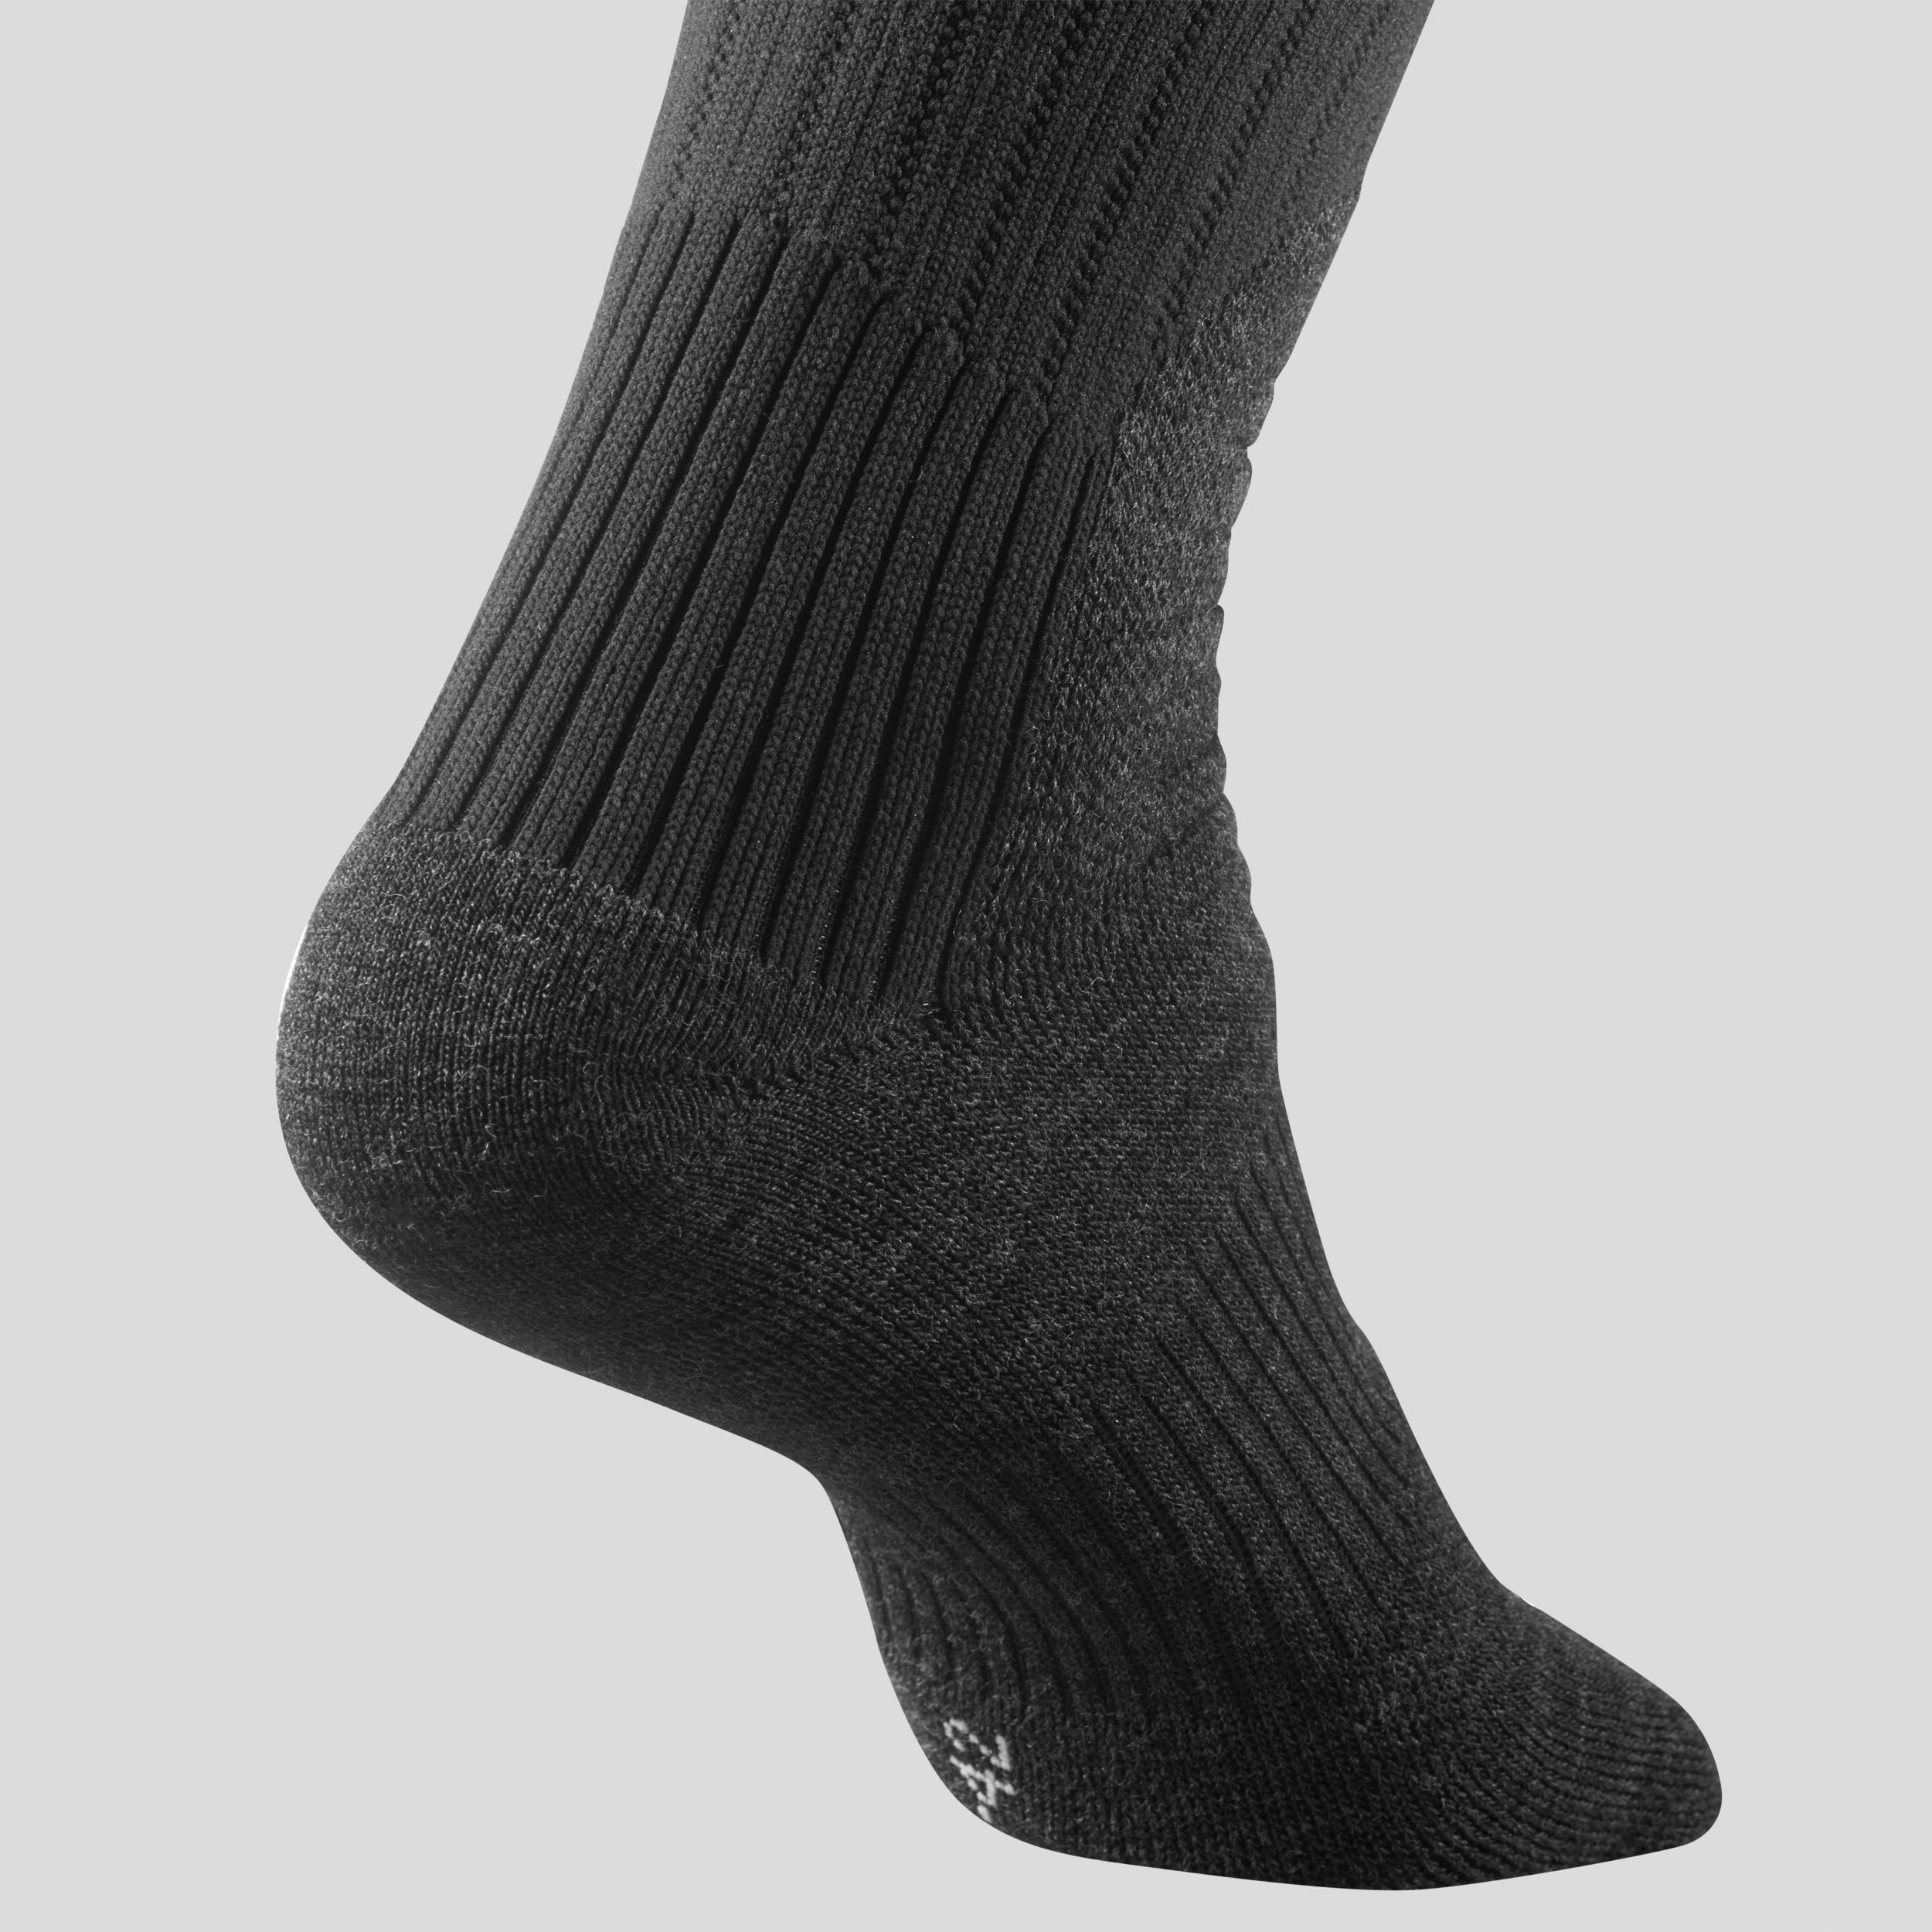 Warm Hiking Socks - SH100 X-WARM HAUTES - 2 Pairs 3/5